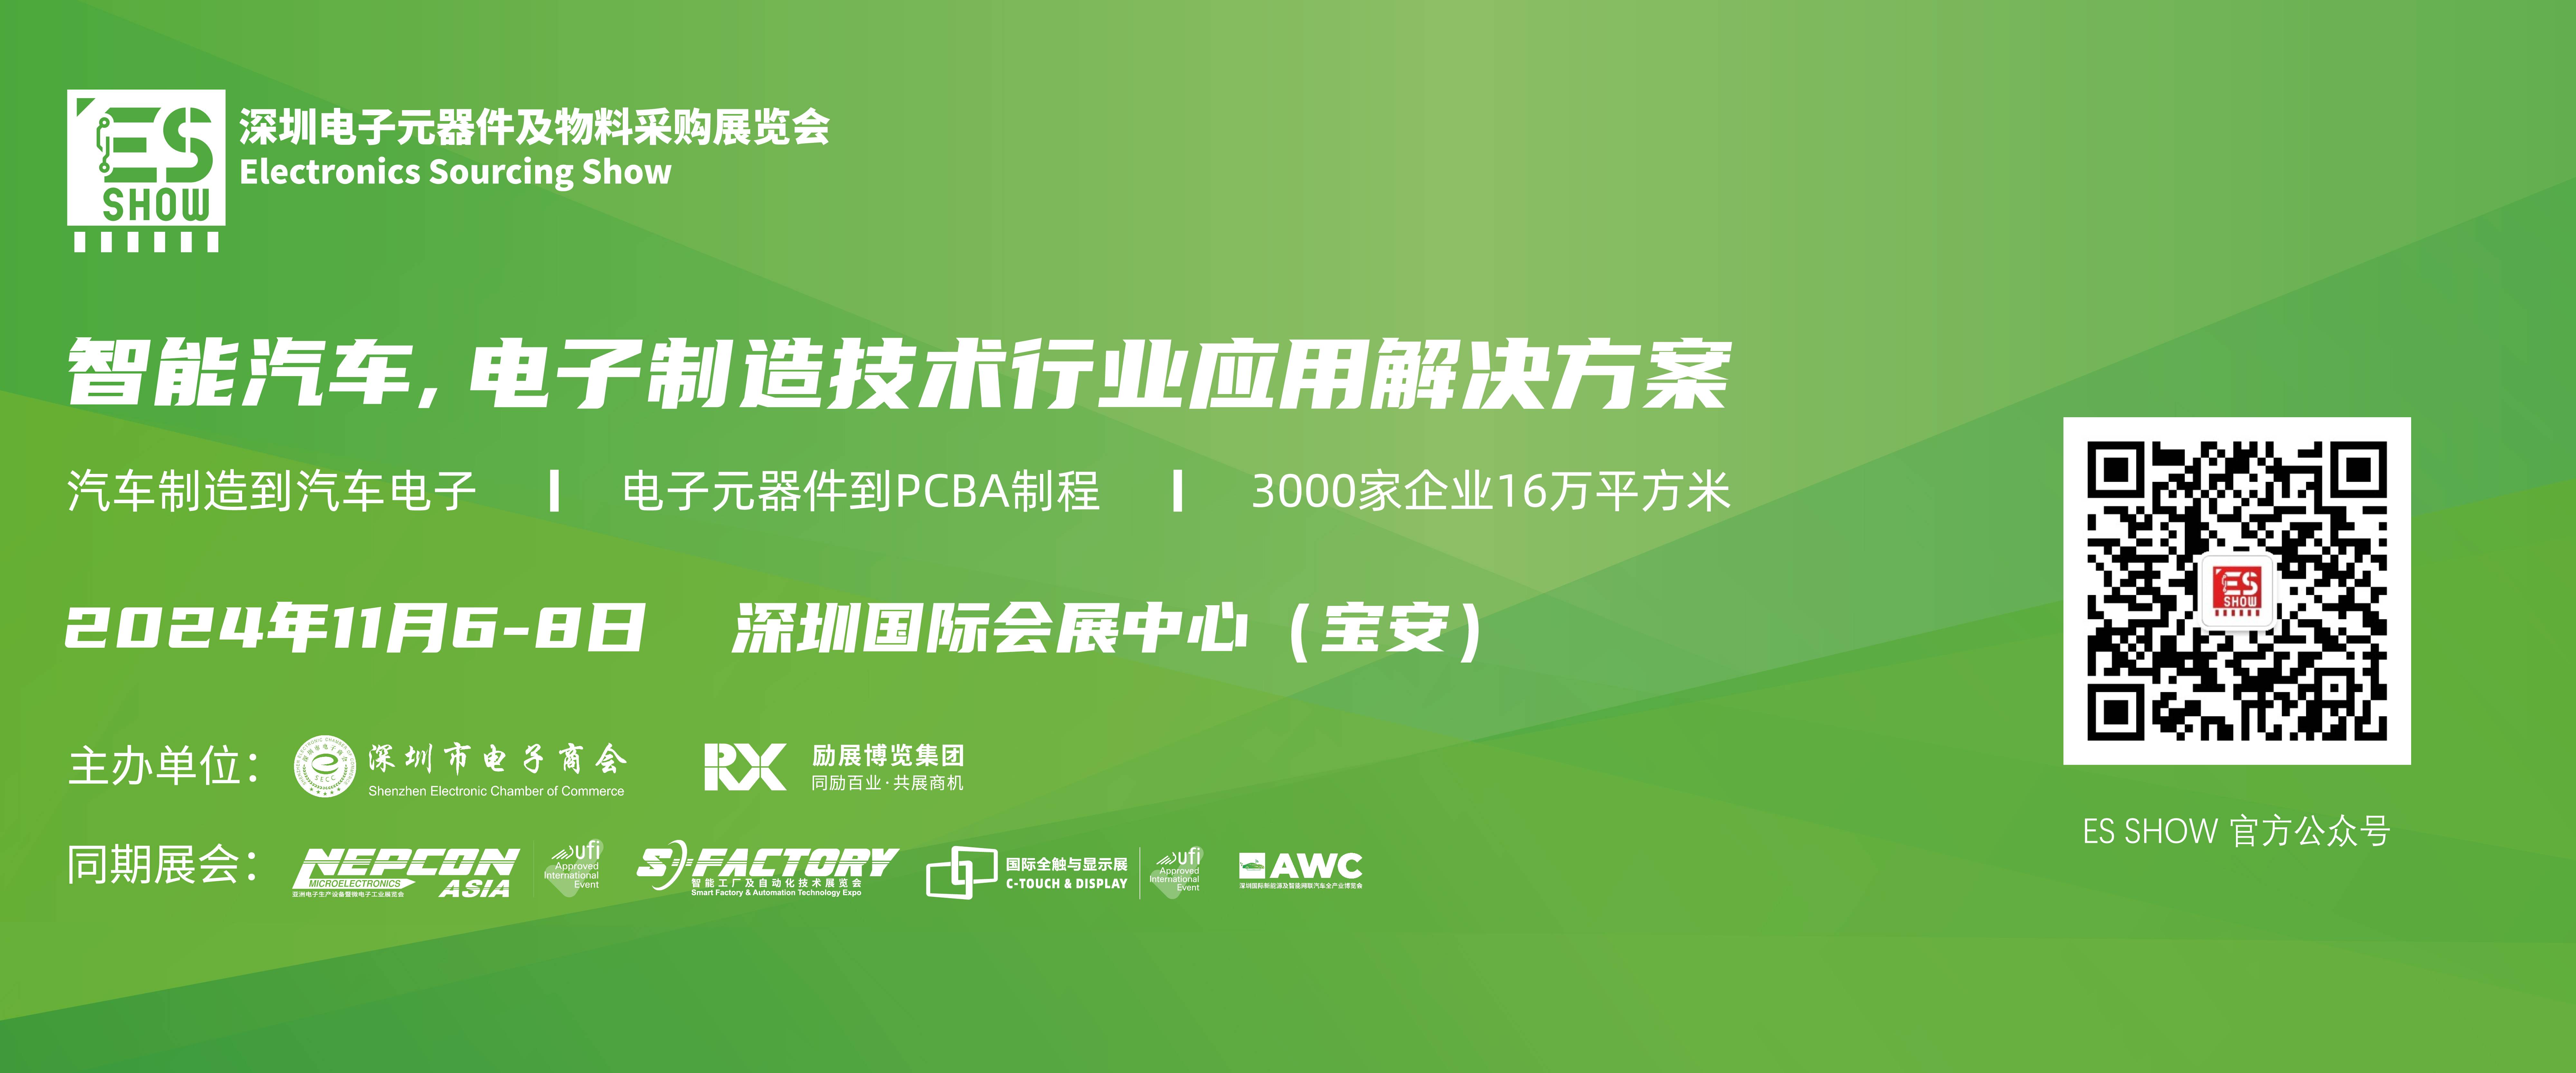 深圳电子展 功率器件 IGBT 华南电子展 中国电子展